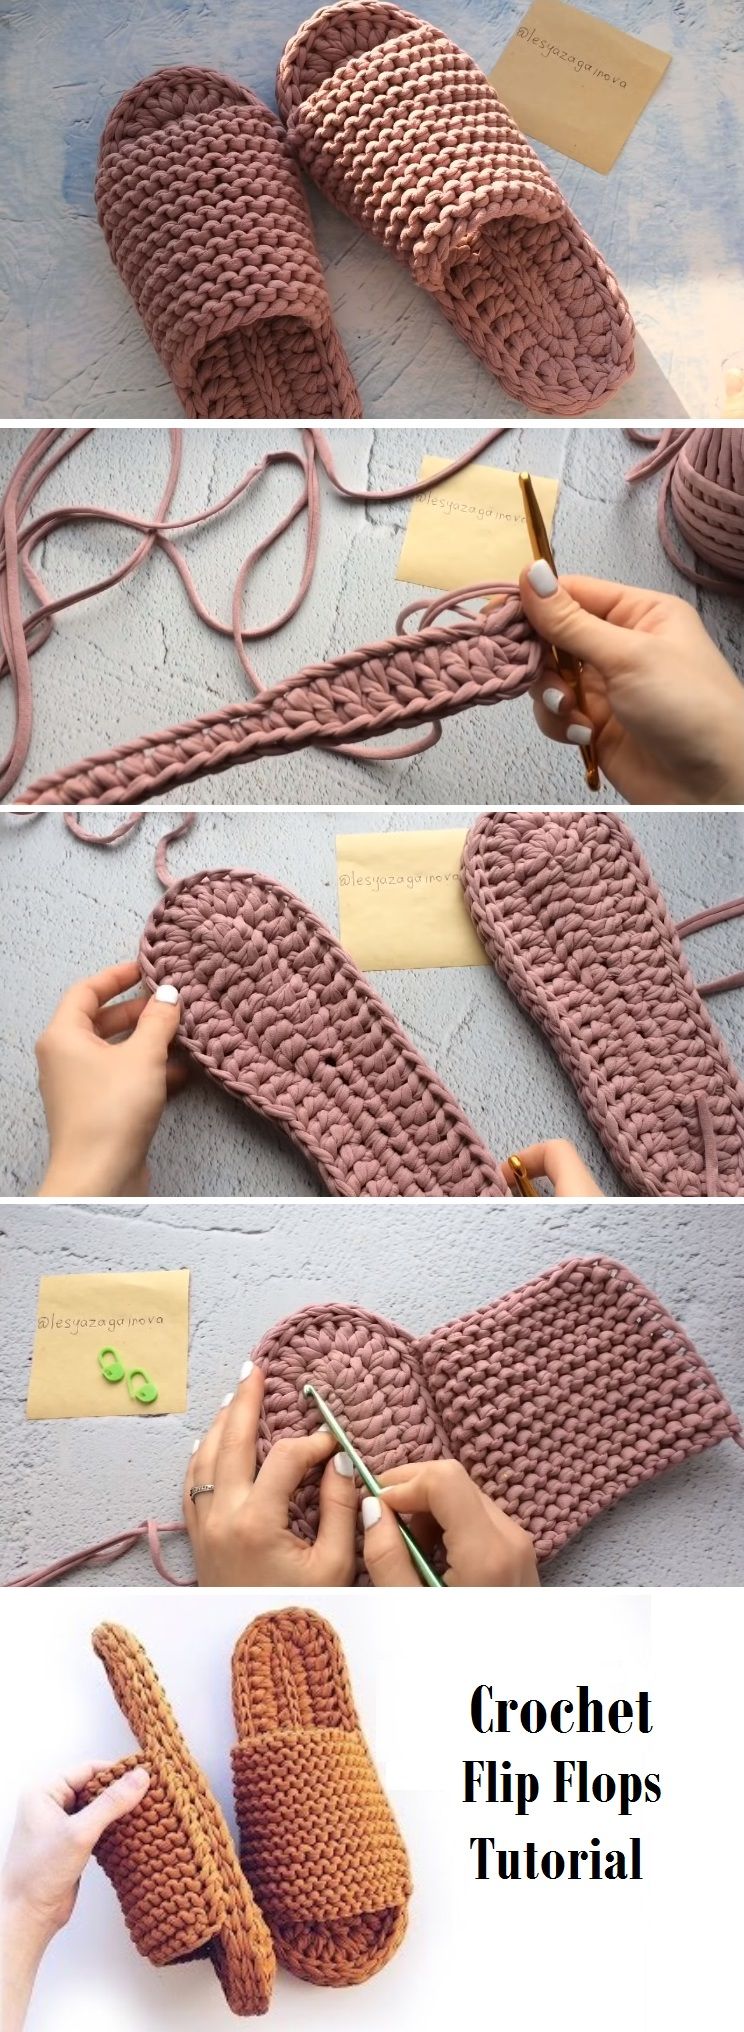 Learn-to-Crochet-Flip-Flops.jpg